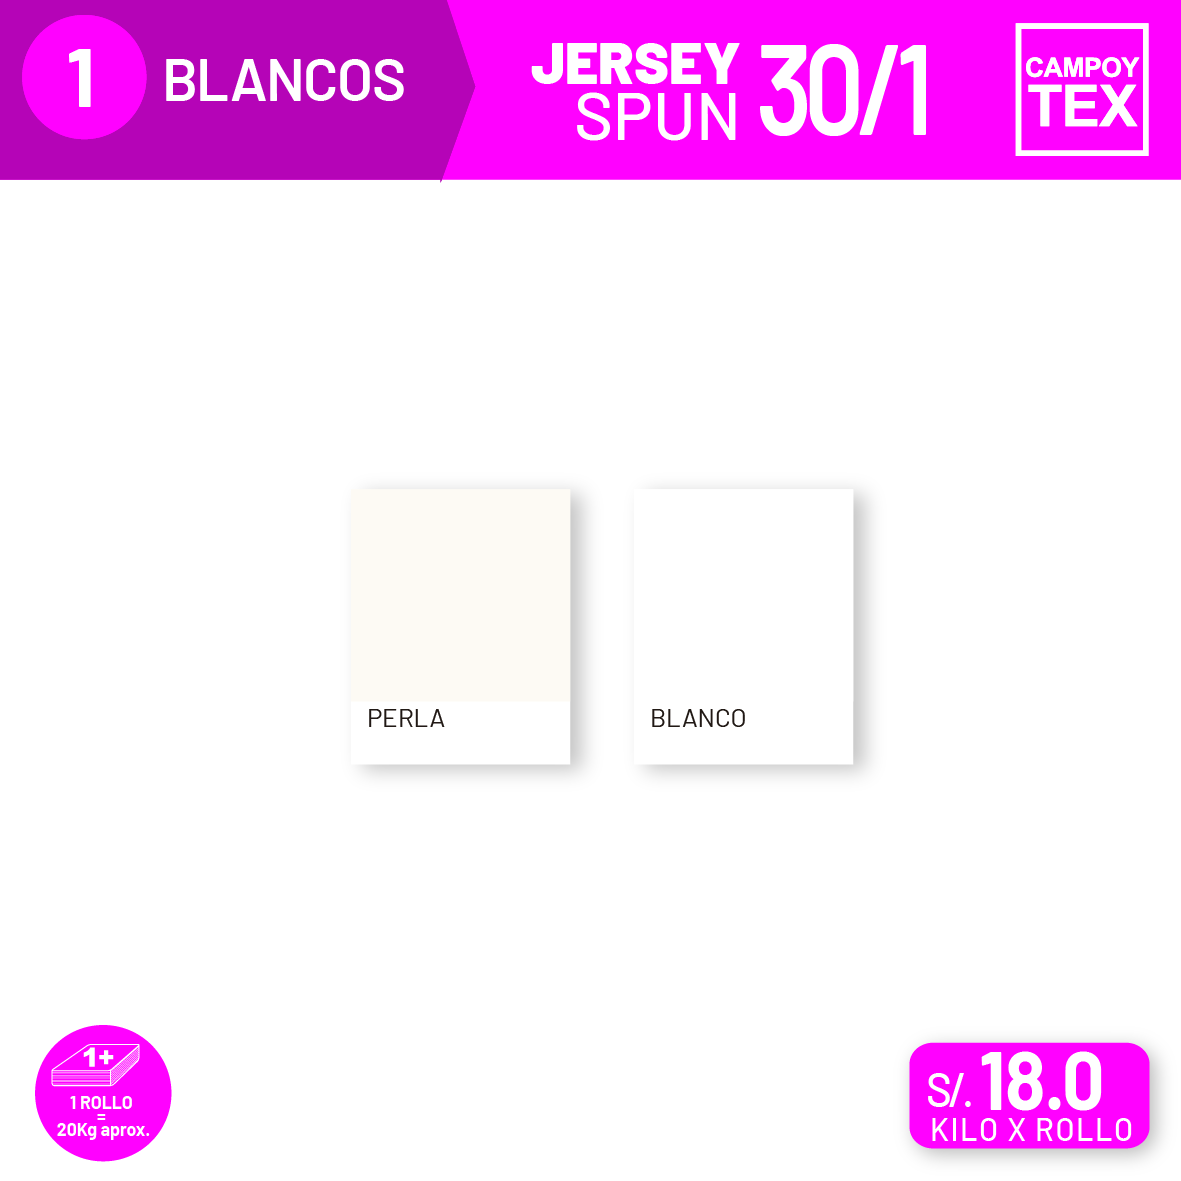 Jersey Spun 30/1 Blancos